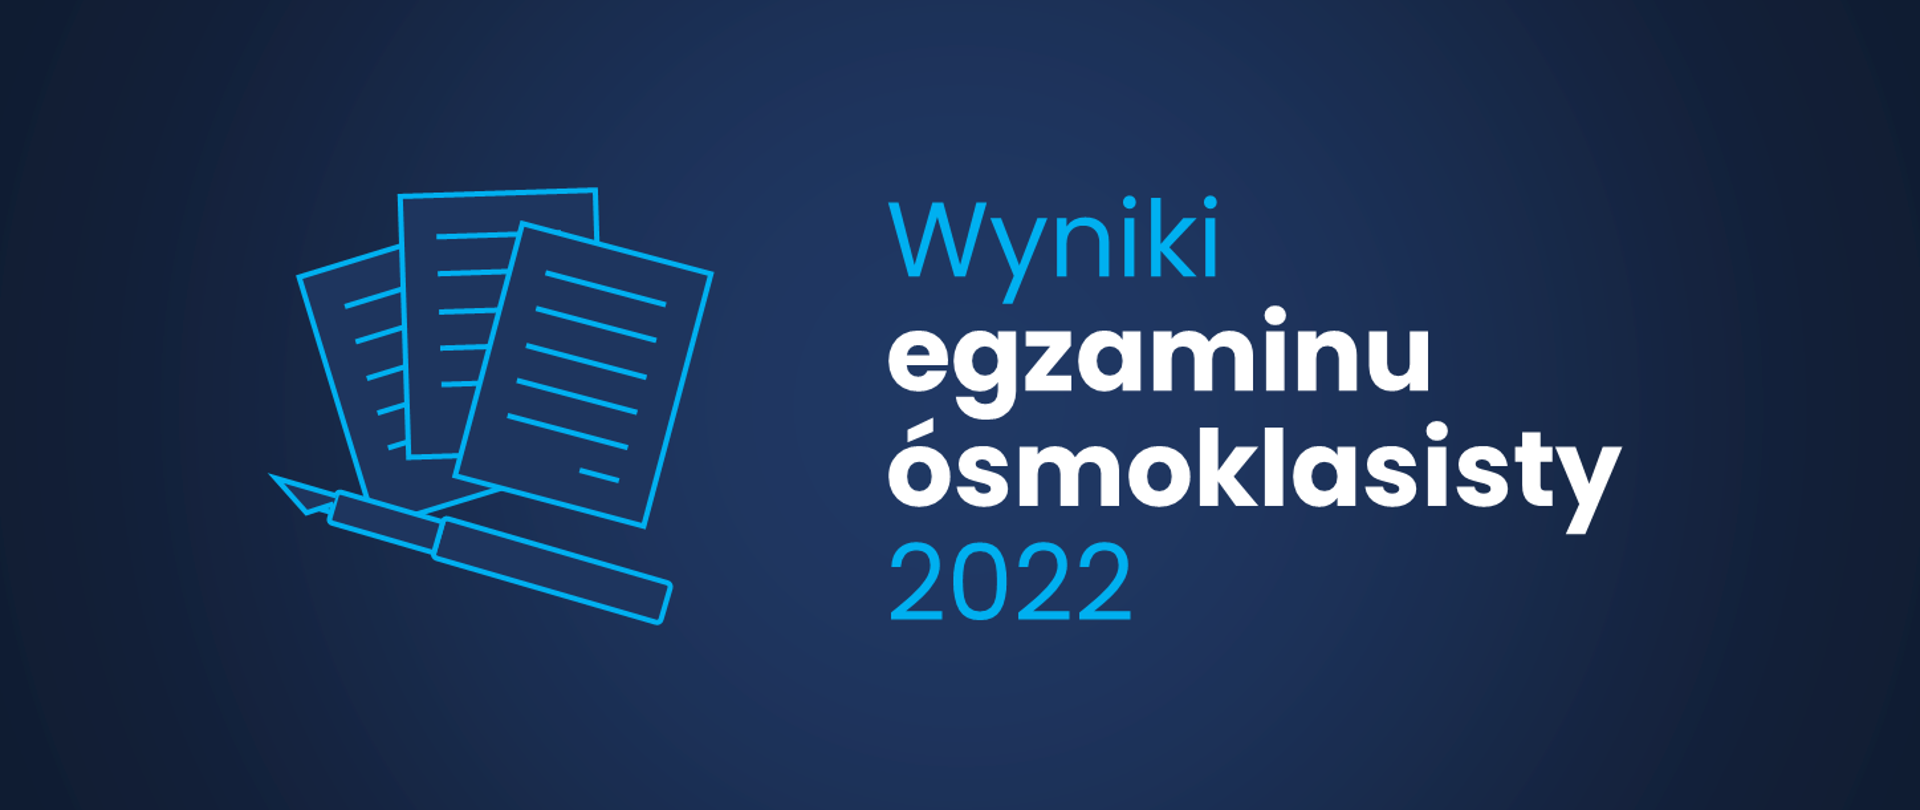 Grafika - na niebieskim tle napis Wyniki egzaminu ósmoklasisty 2022.